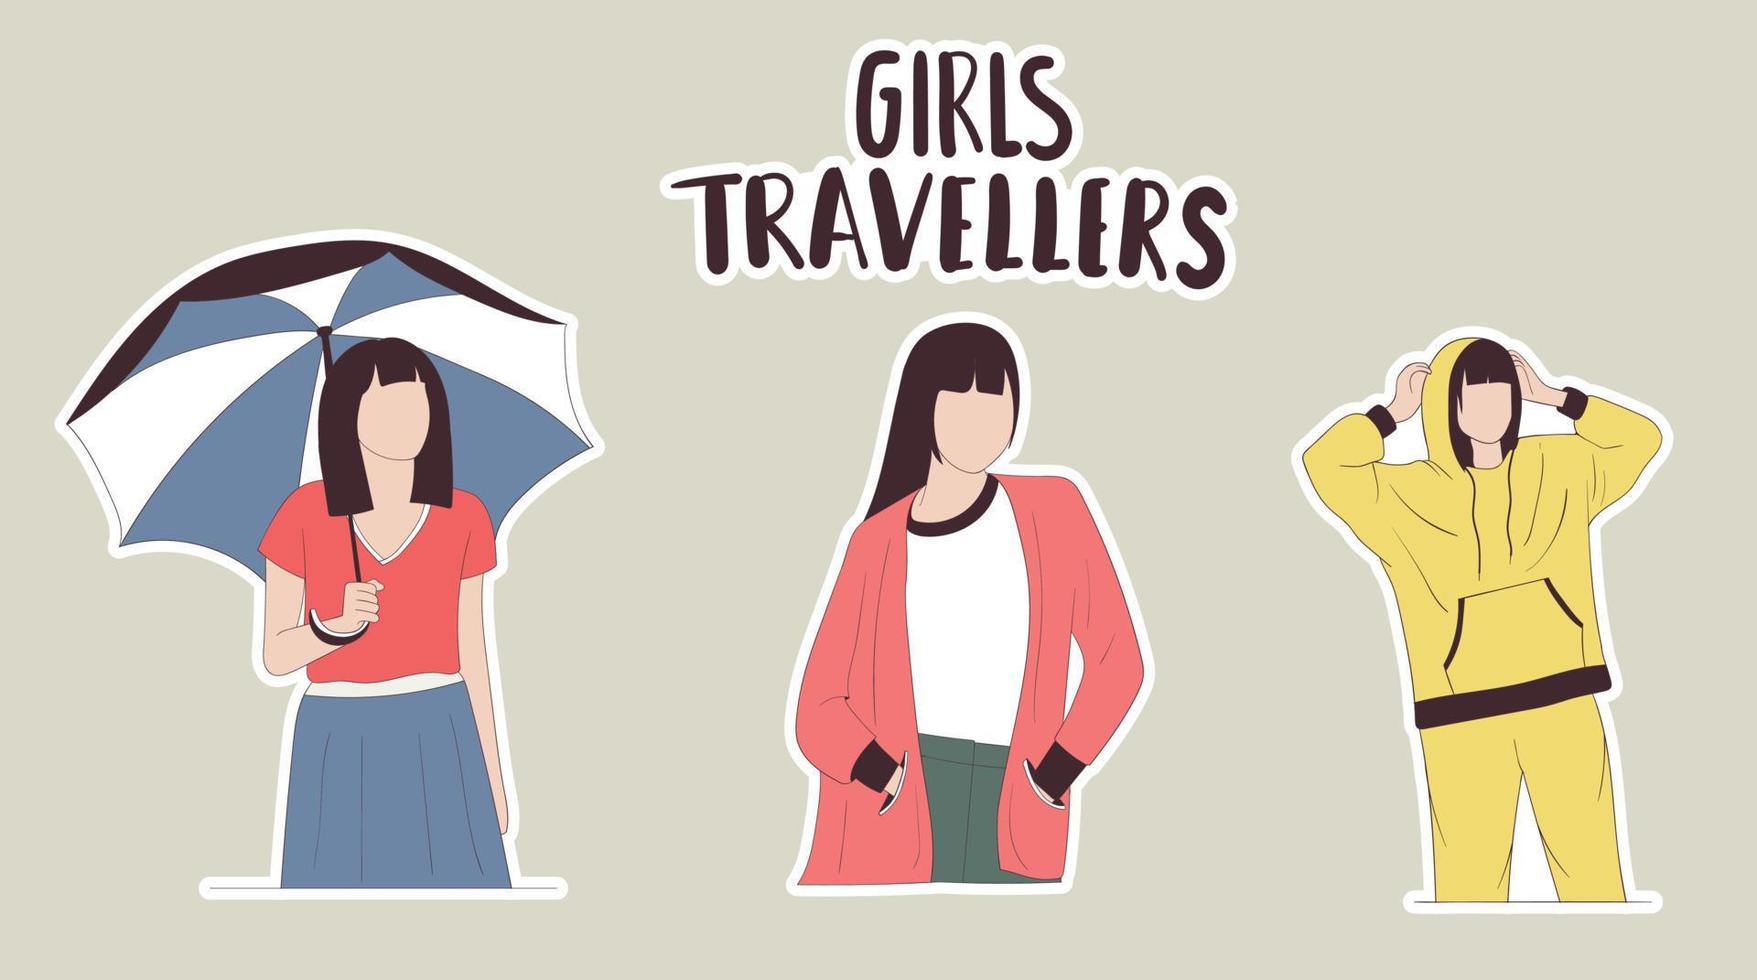 kleurrijke handgetekende stickers voor meisjesreizigers vector